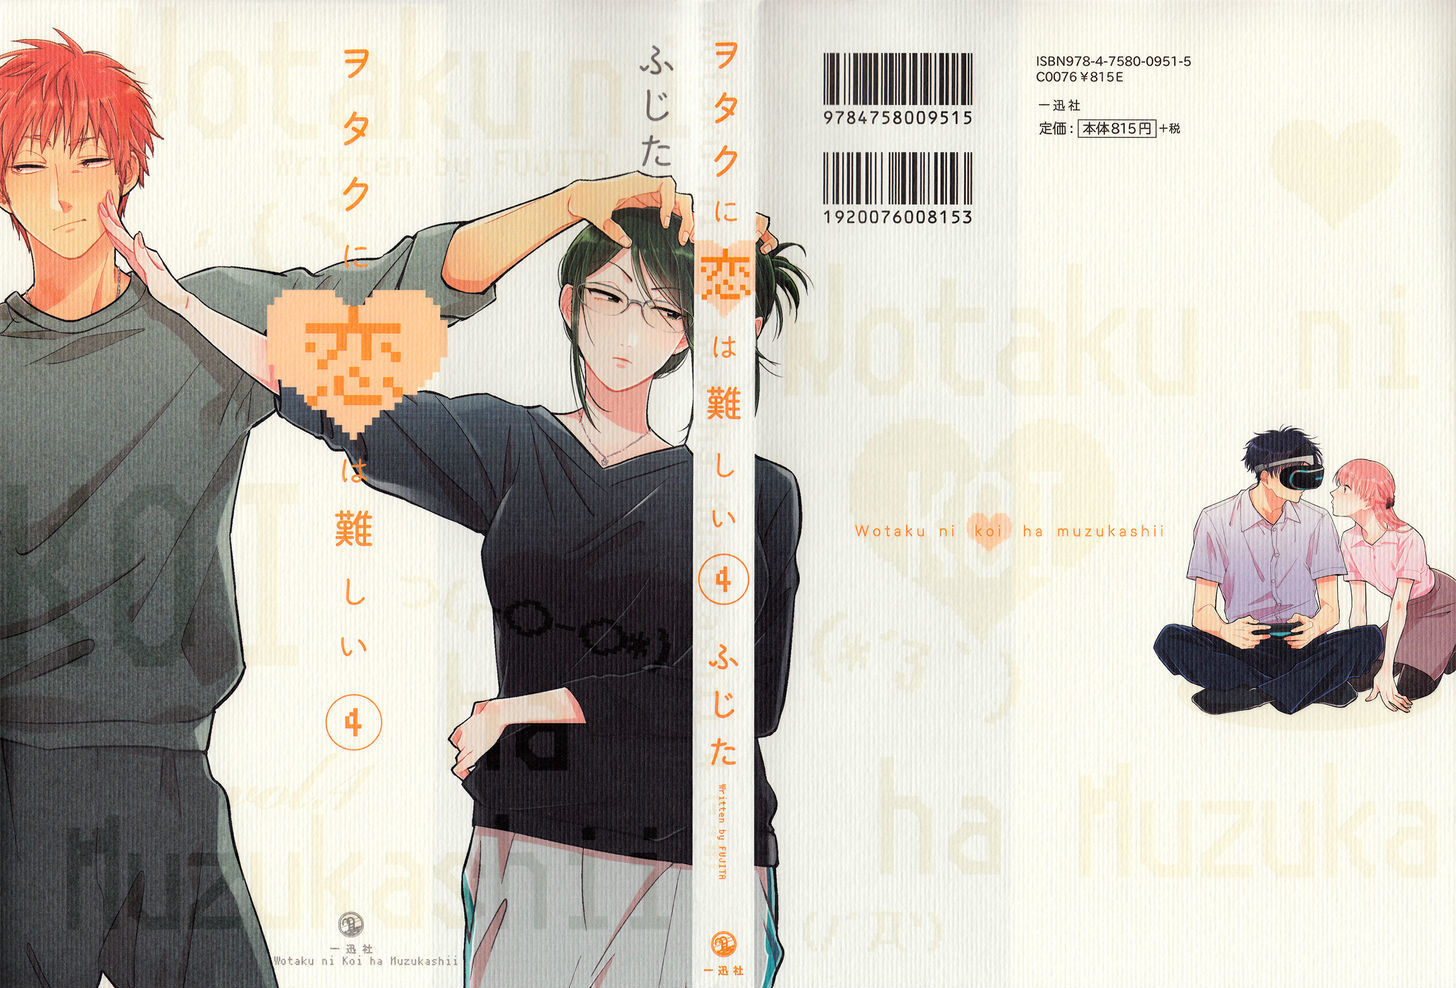 Read Wotaku ni Koi wa Muzukashii Manga English [New Chapters